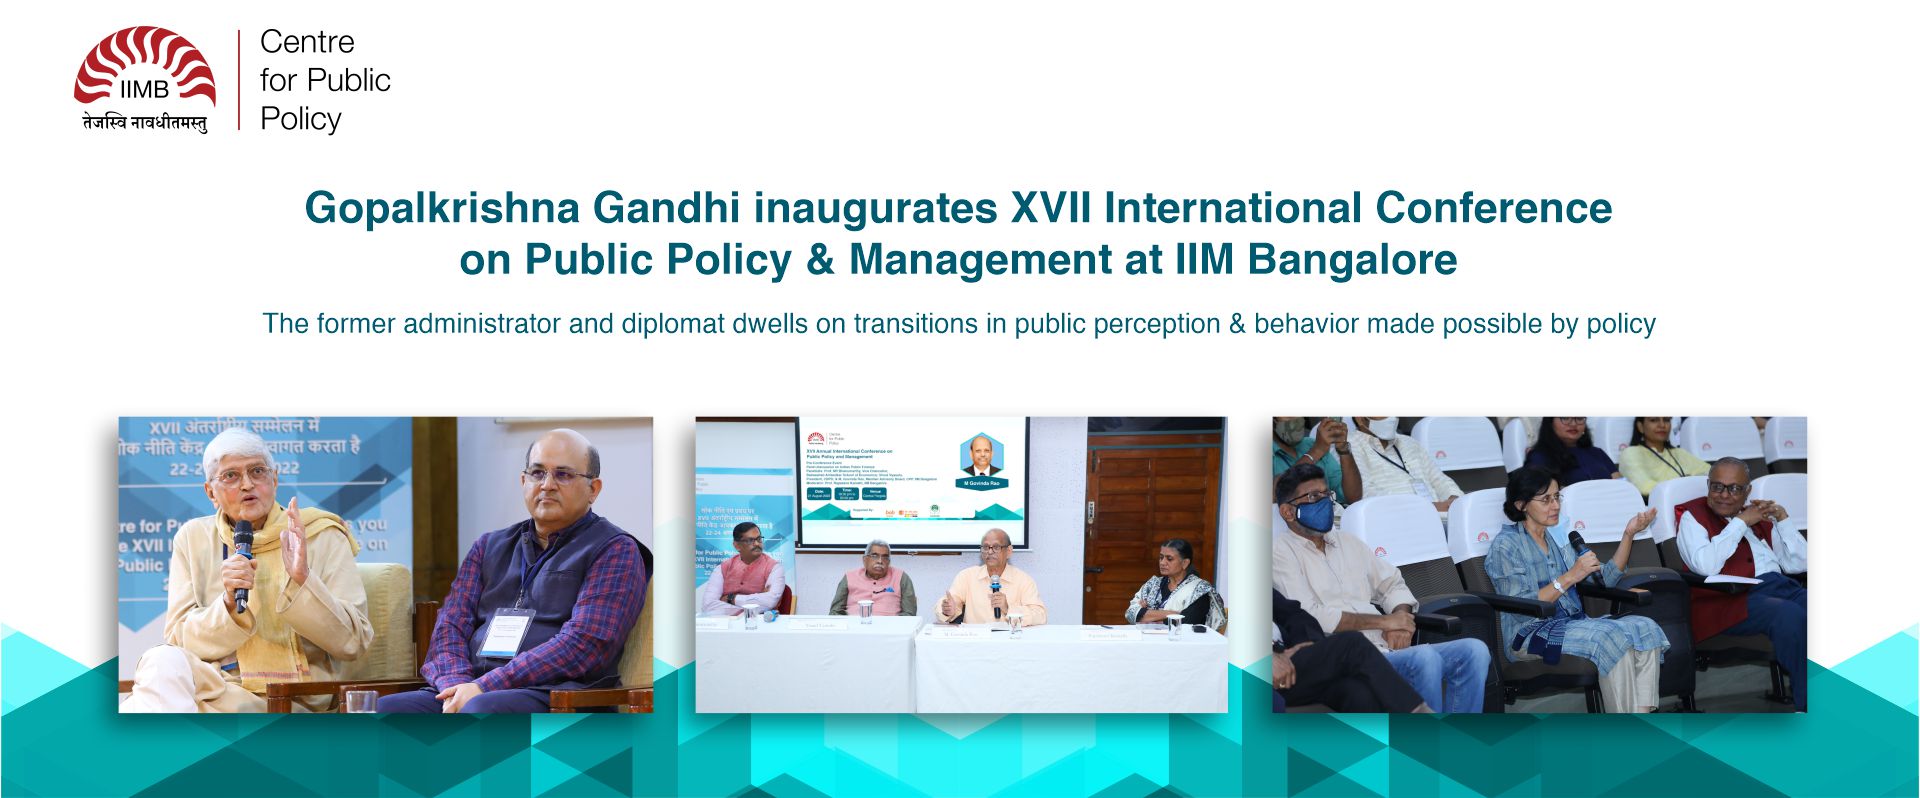 Gopalkrishna Gandhi inaugurates XVII International Conference on Public Policy & Management at IIM Bangalore